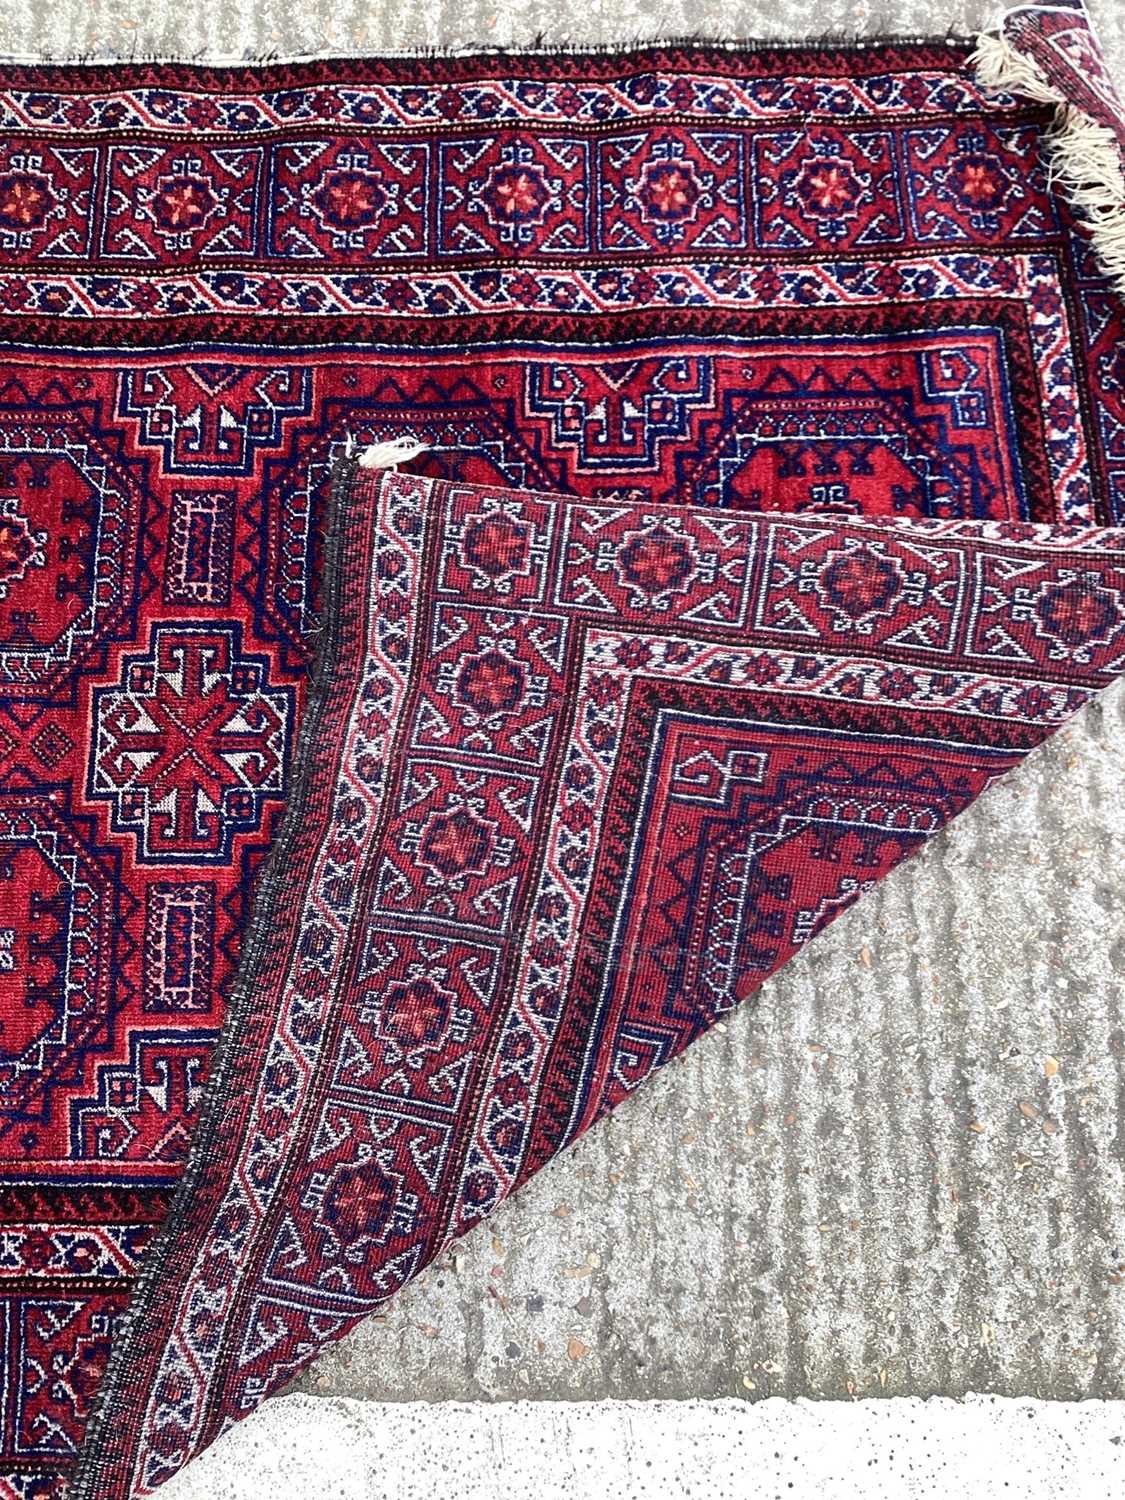 Baluchi rug 1.90m x 1.02m - Image 5 of 5